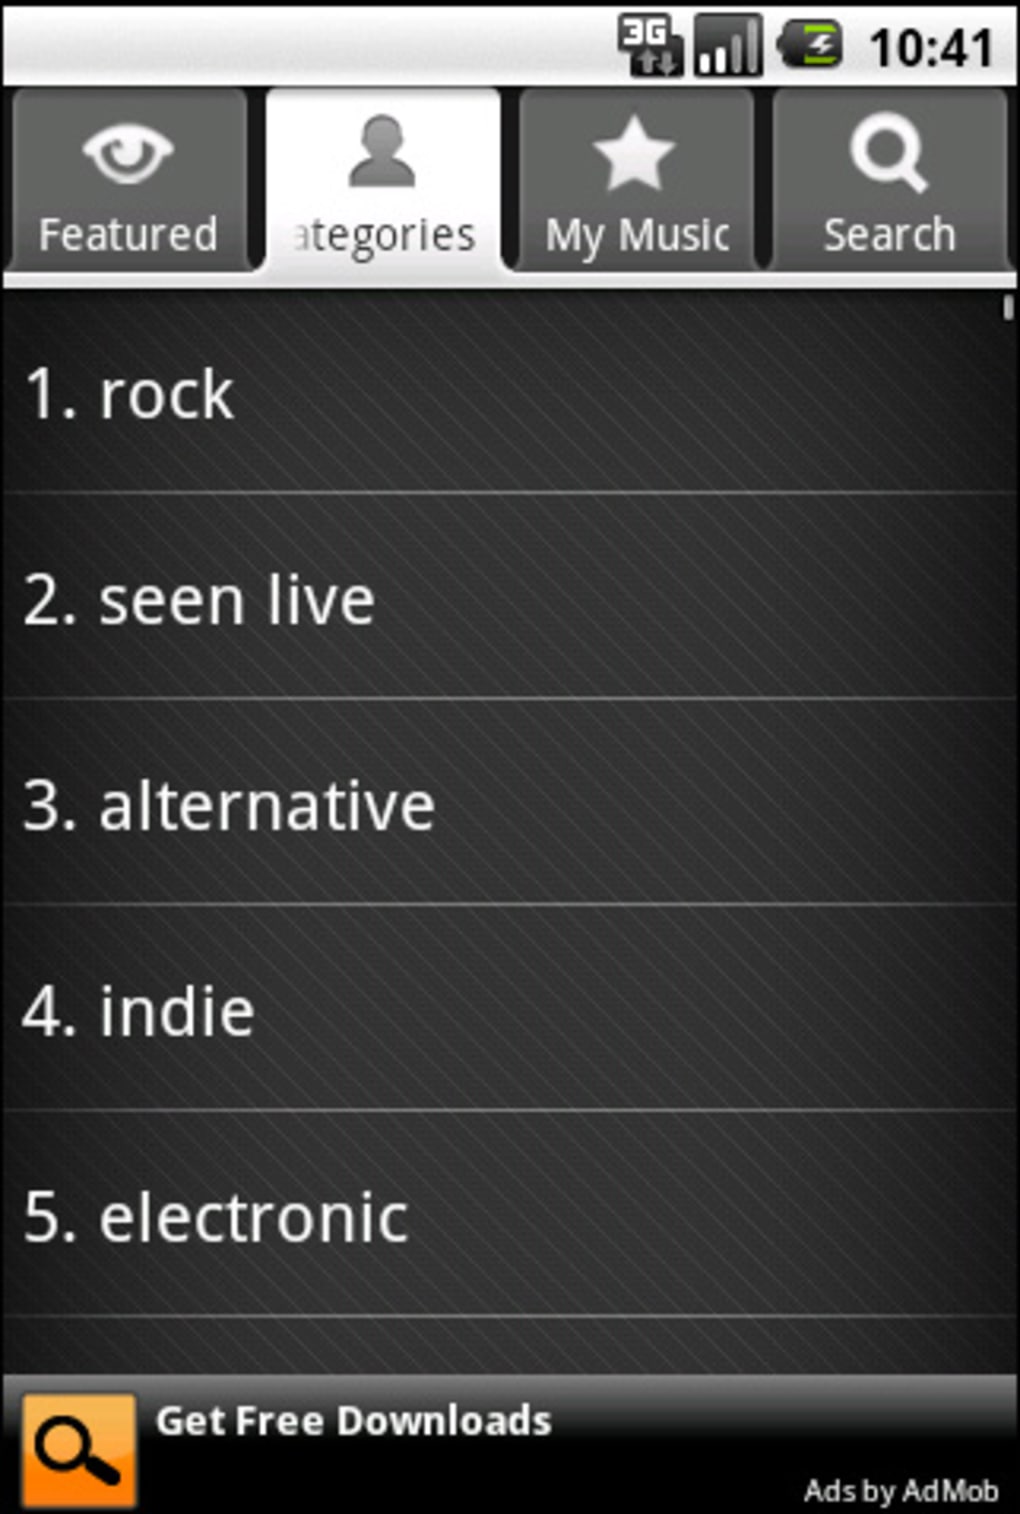 Download do APK de Eu Sei a Música para Android